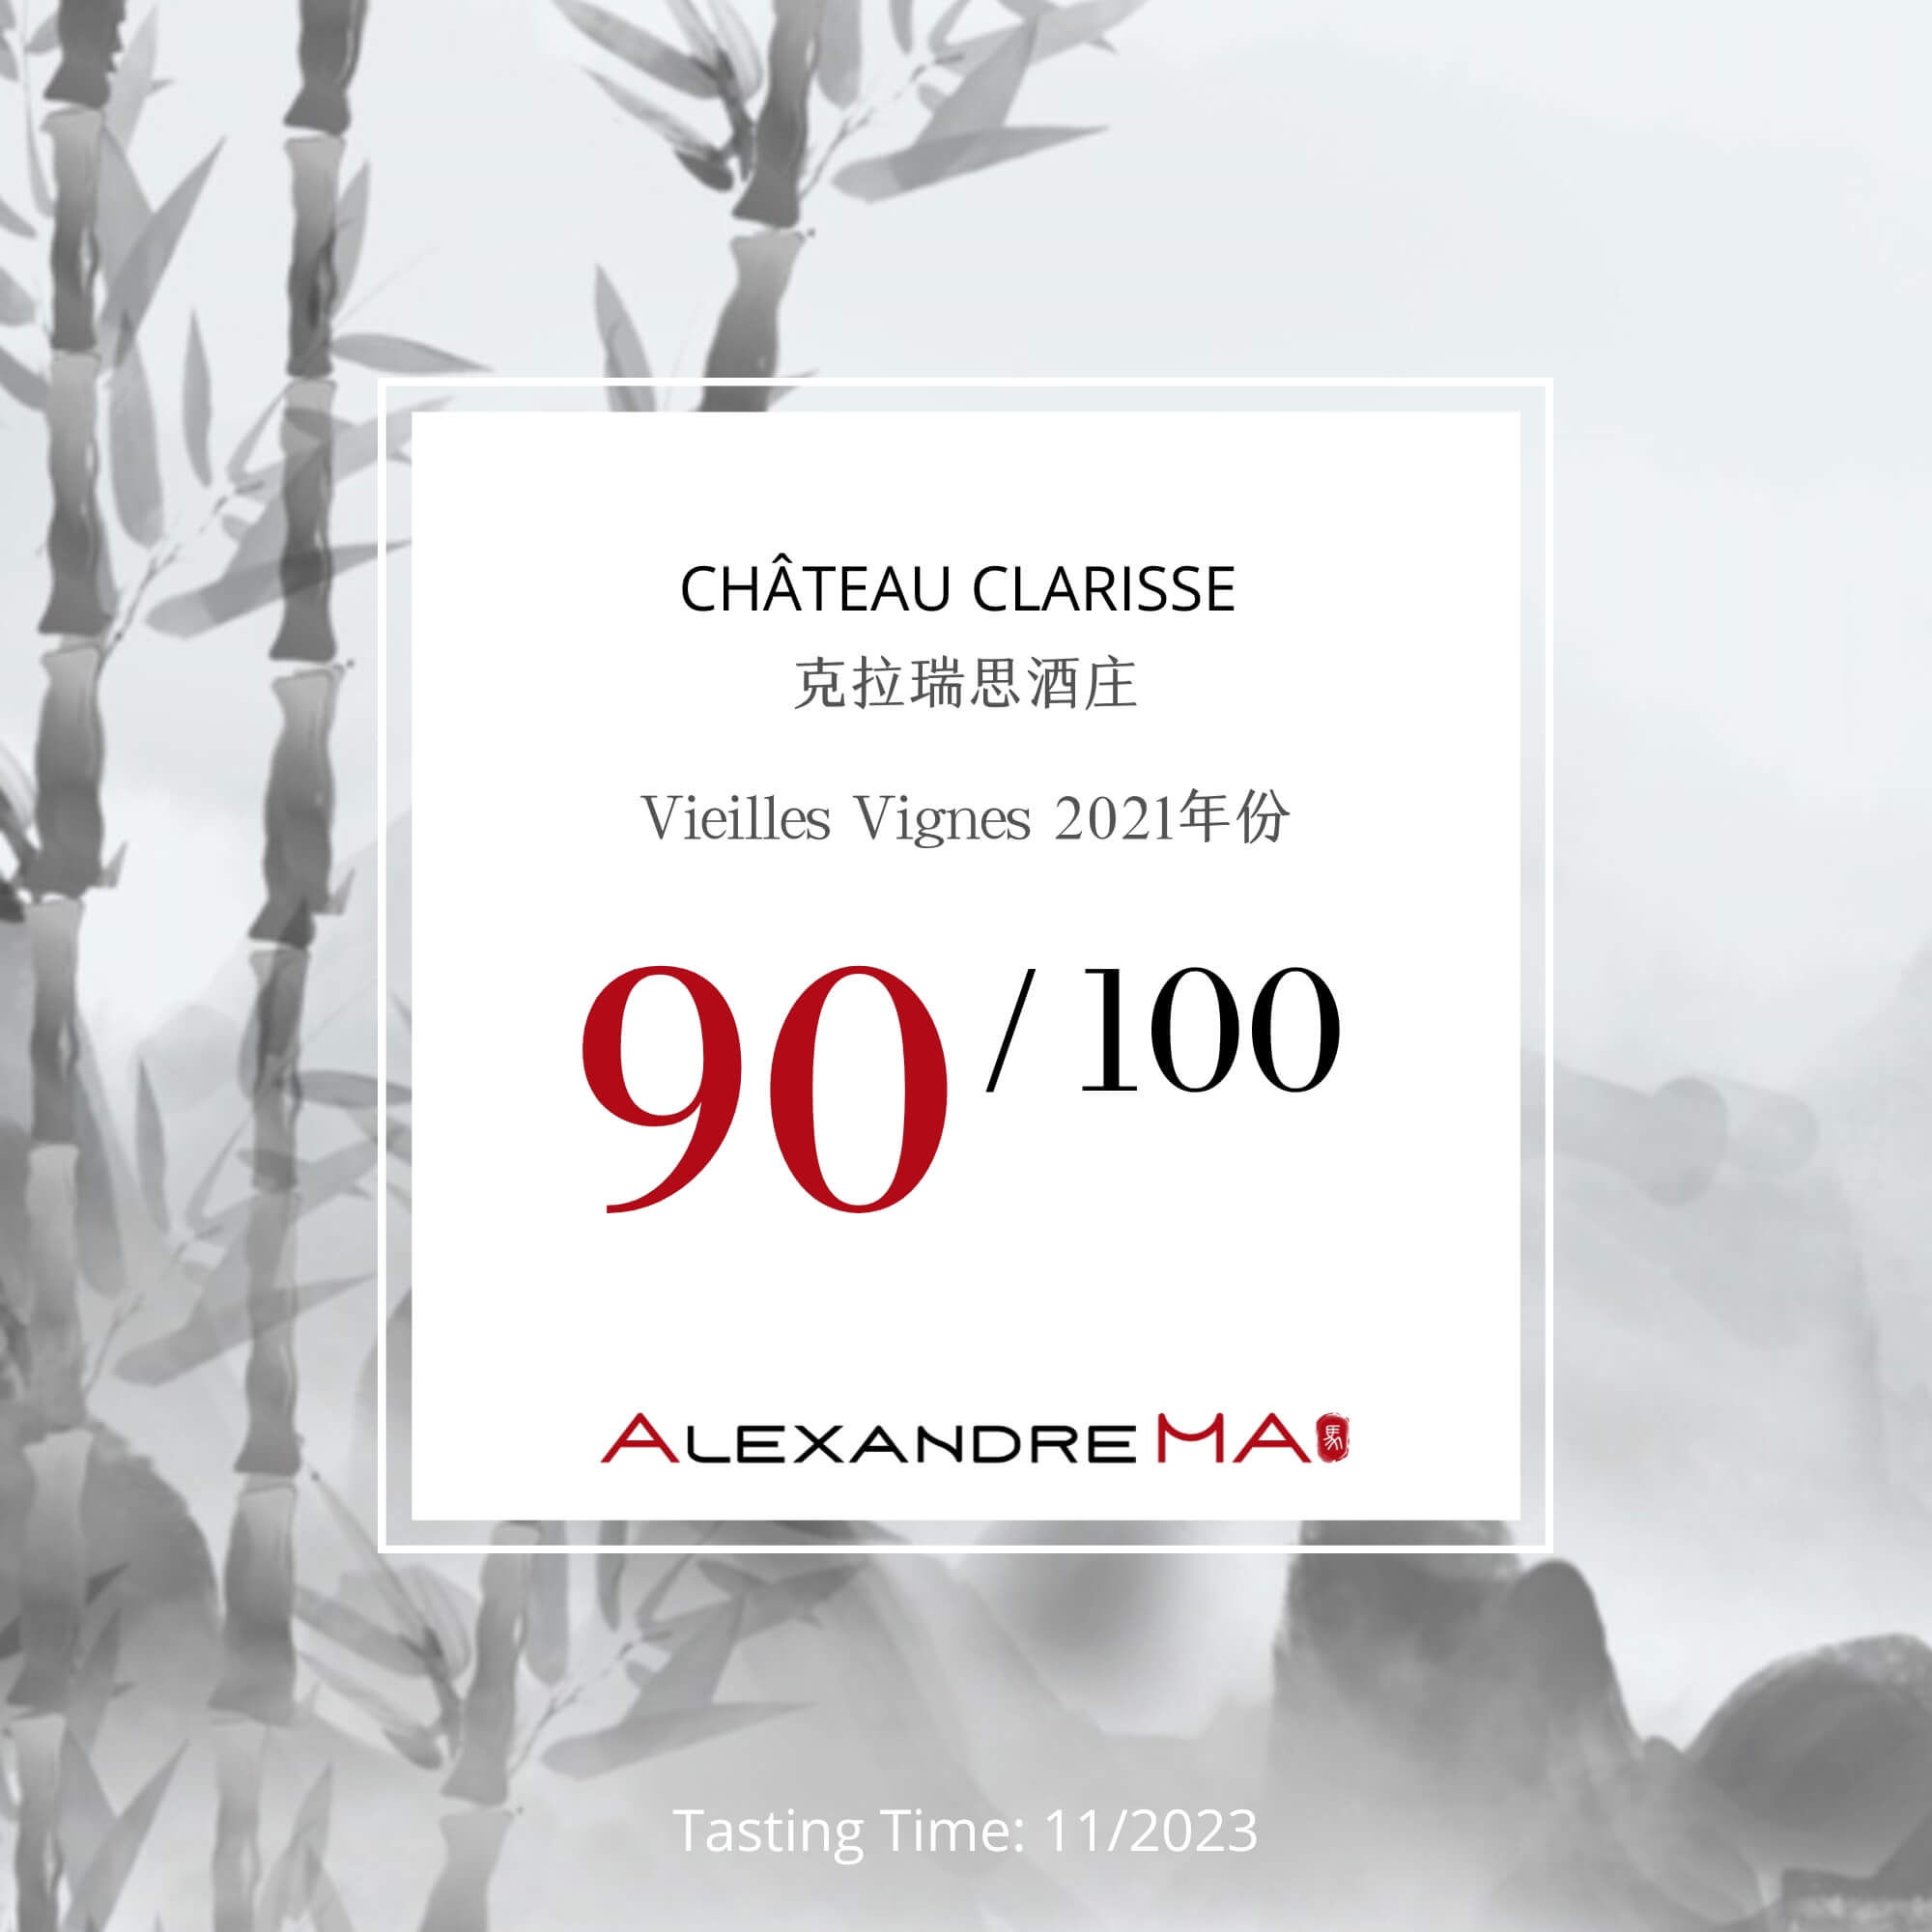 Château Clarisse 2021 Vieilles Vignes - Alexandre MA